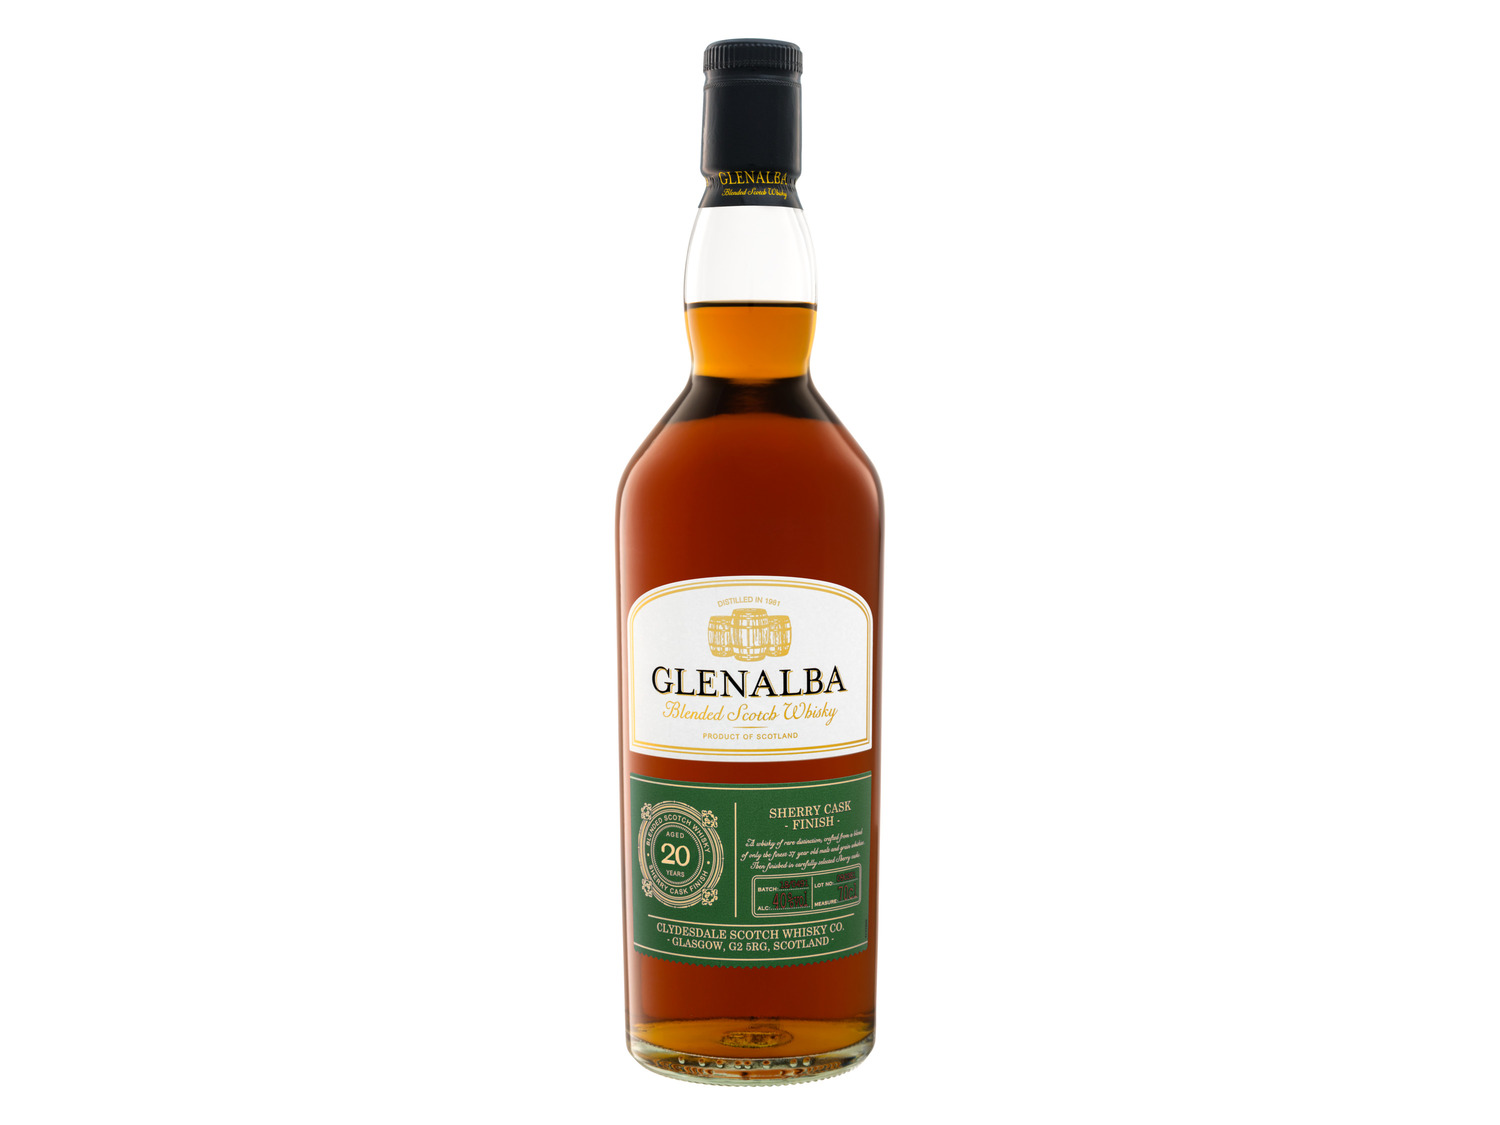 Glenalba Blended Scotch Whisky Sherry Cask Finish J… 20